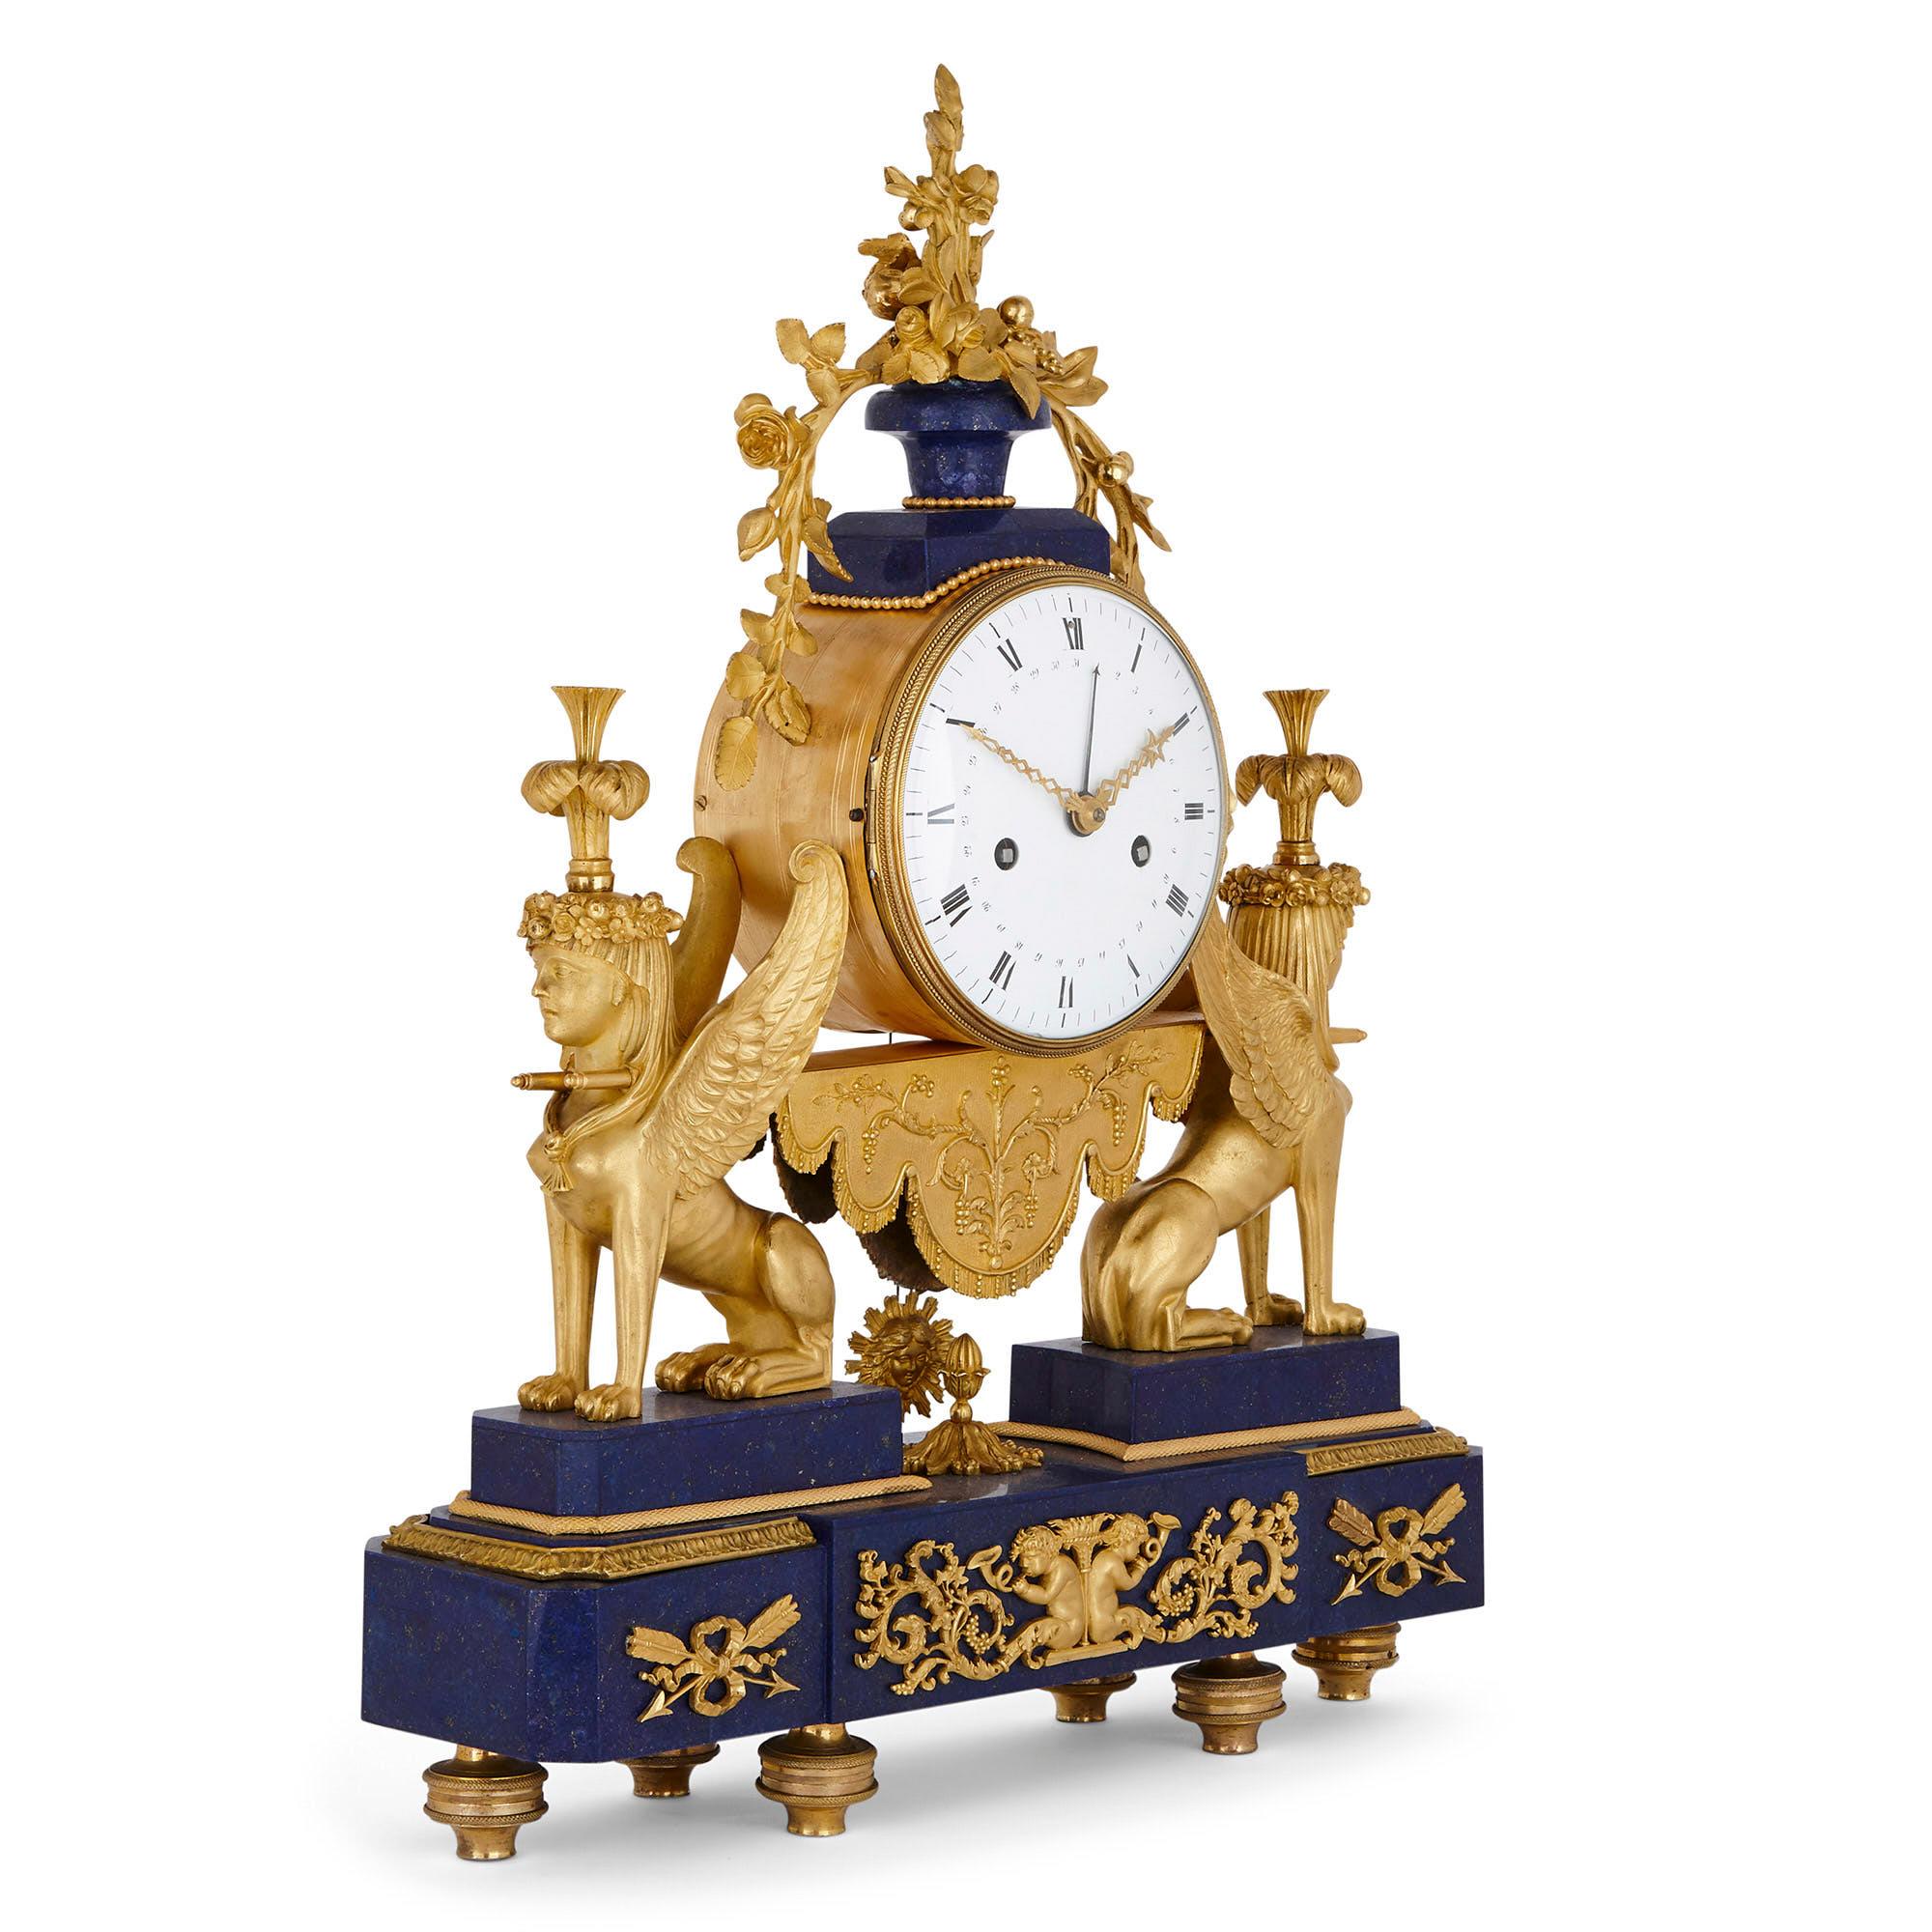 Cette exquise horloge de cheminée du début du XIXe siècle est montée en bronze doré et a bénéficié de l'ajout d'un placage de lapis-lazuli plus tardif. L'horloge est formée d'un tambour cylindrique inséré dans un cadran circulaire inscrit en